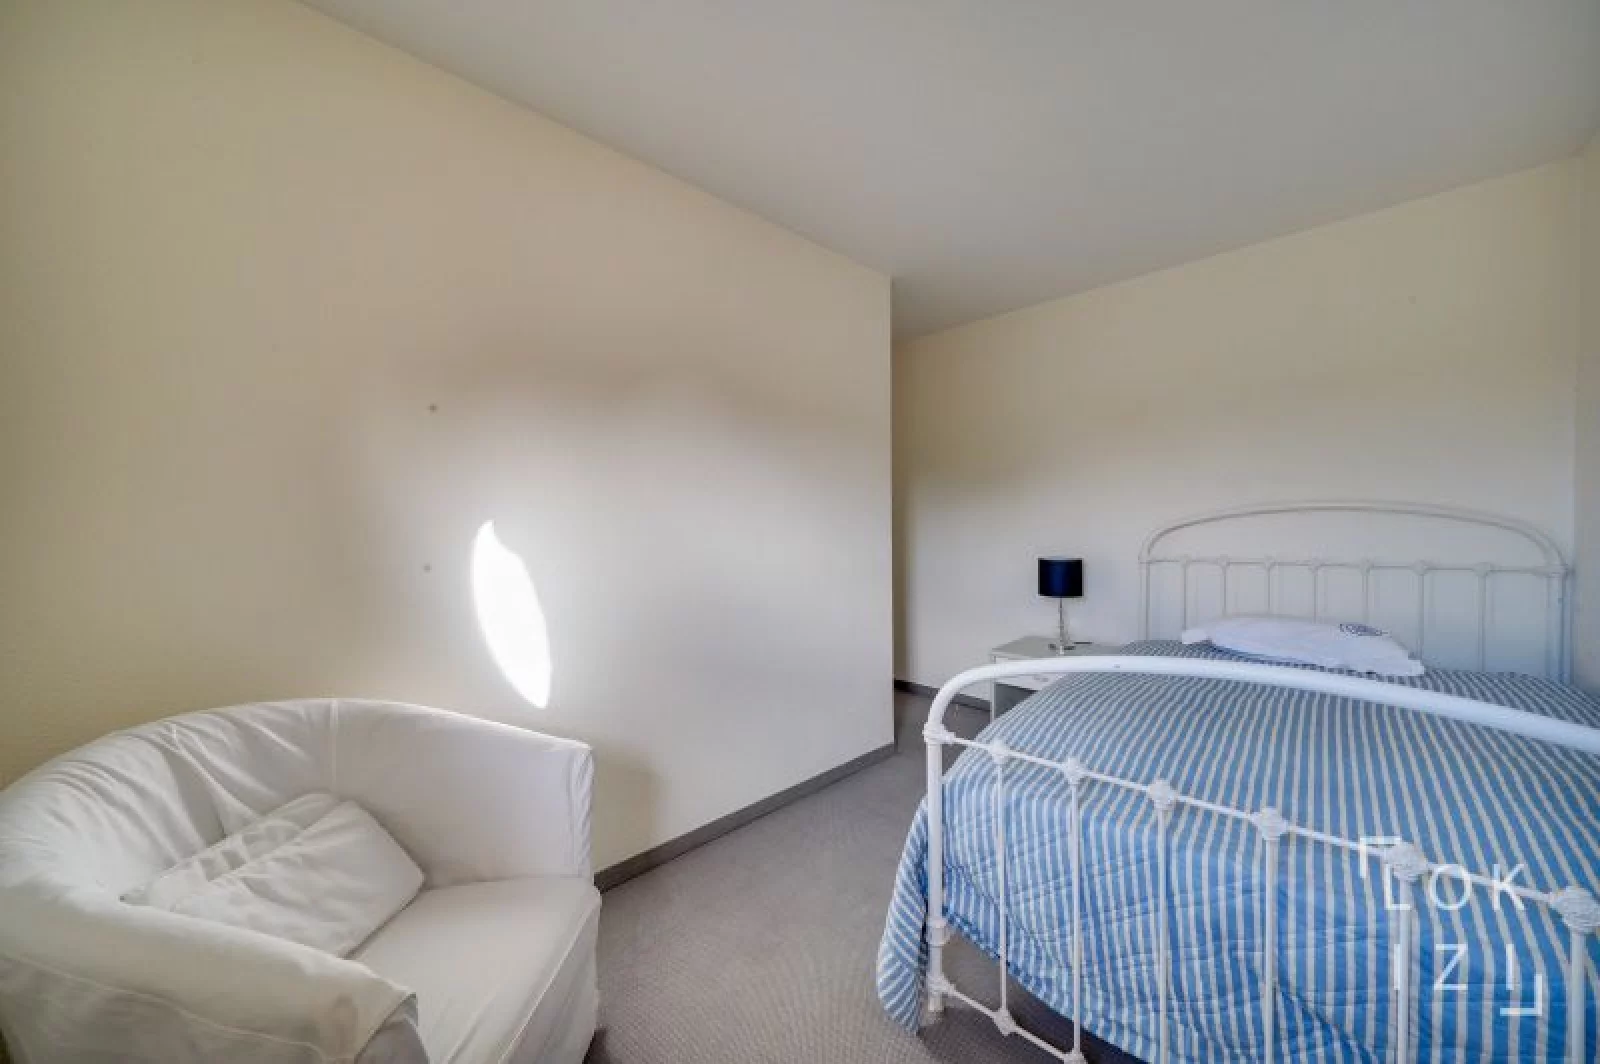 Location appartement meublé duplex T4 de 101m² (Bordeaux St Augustin)